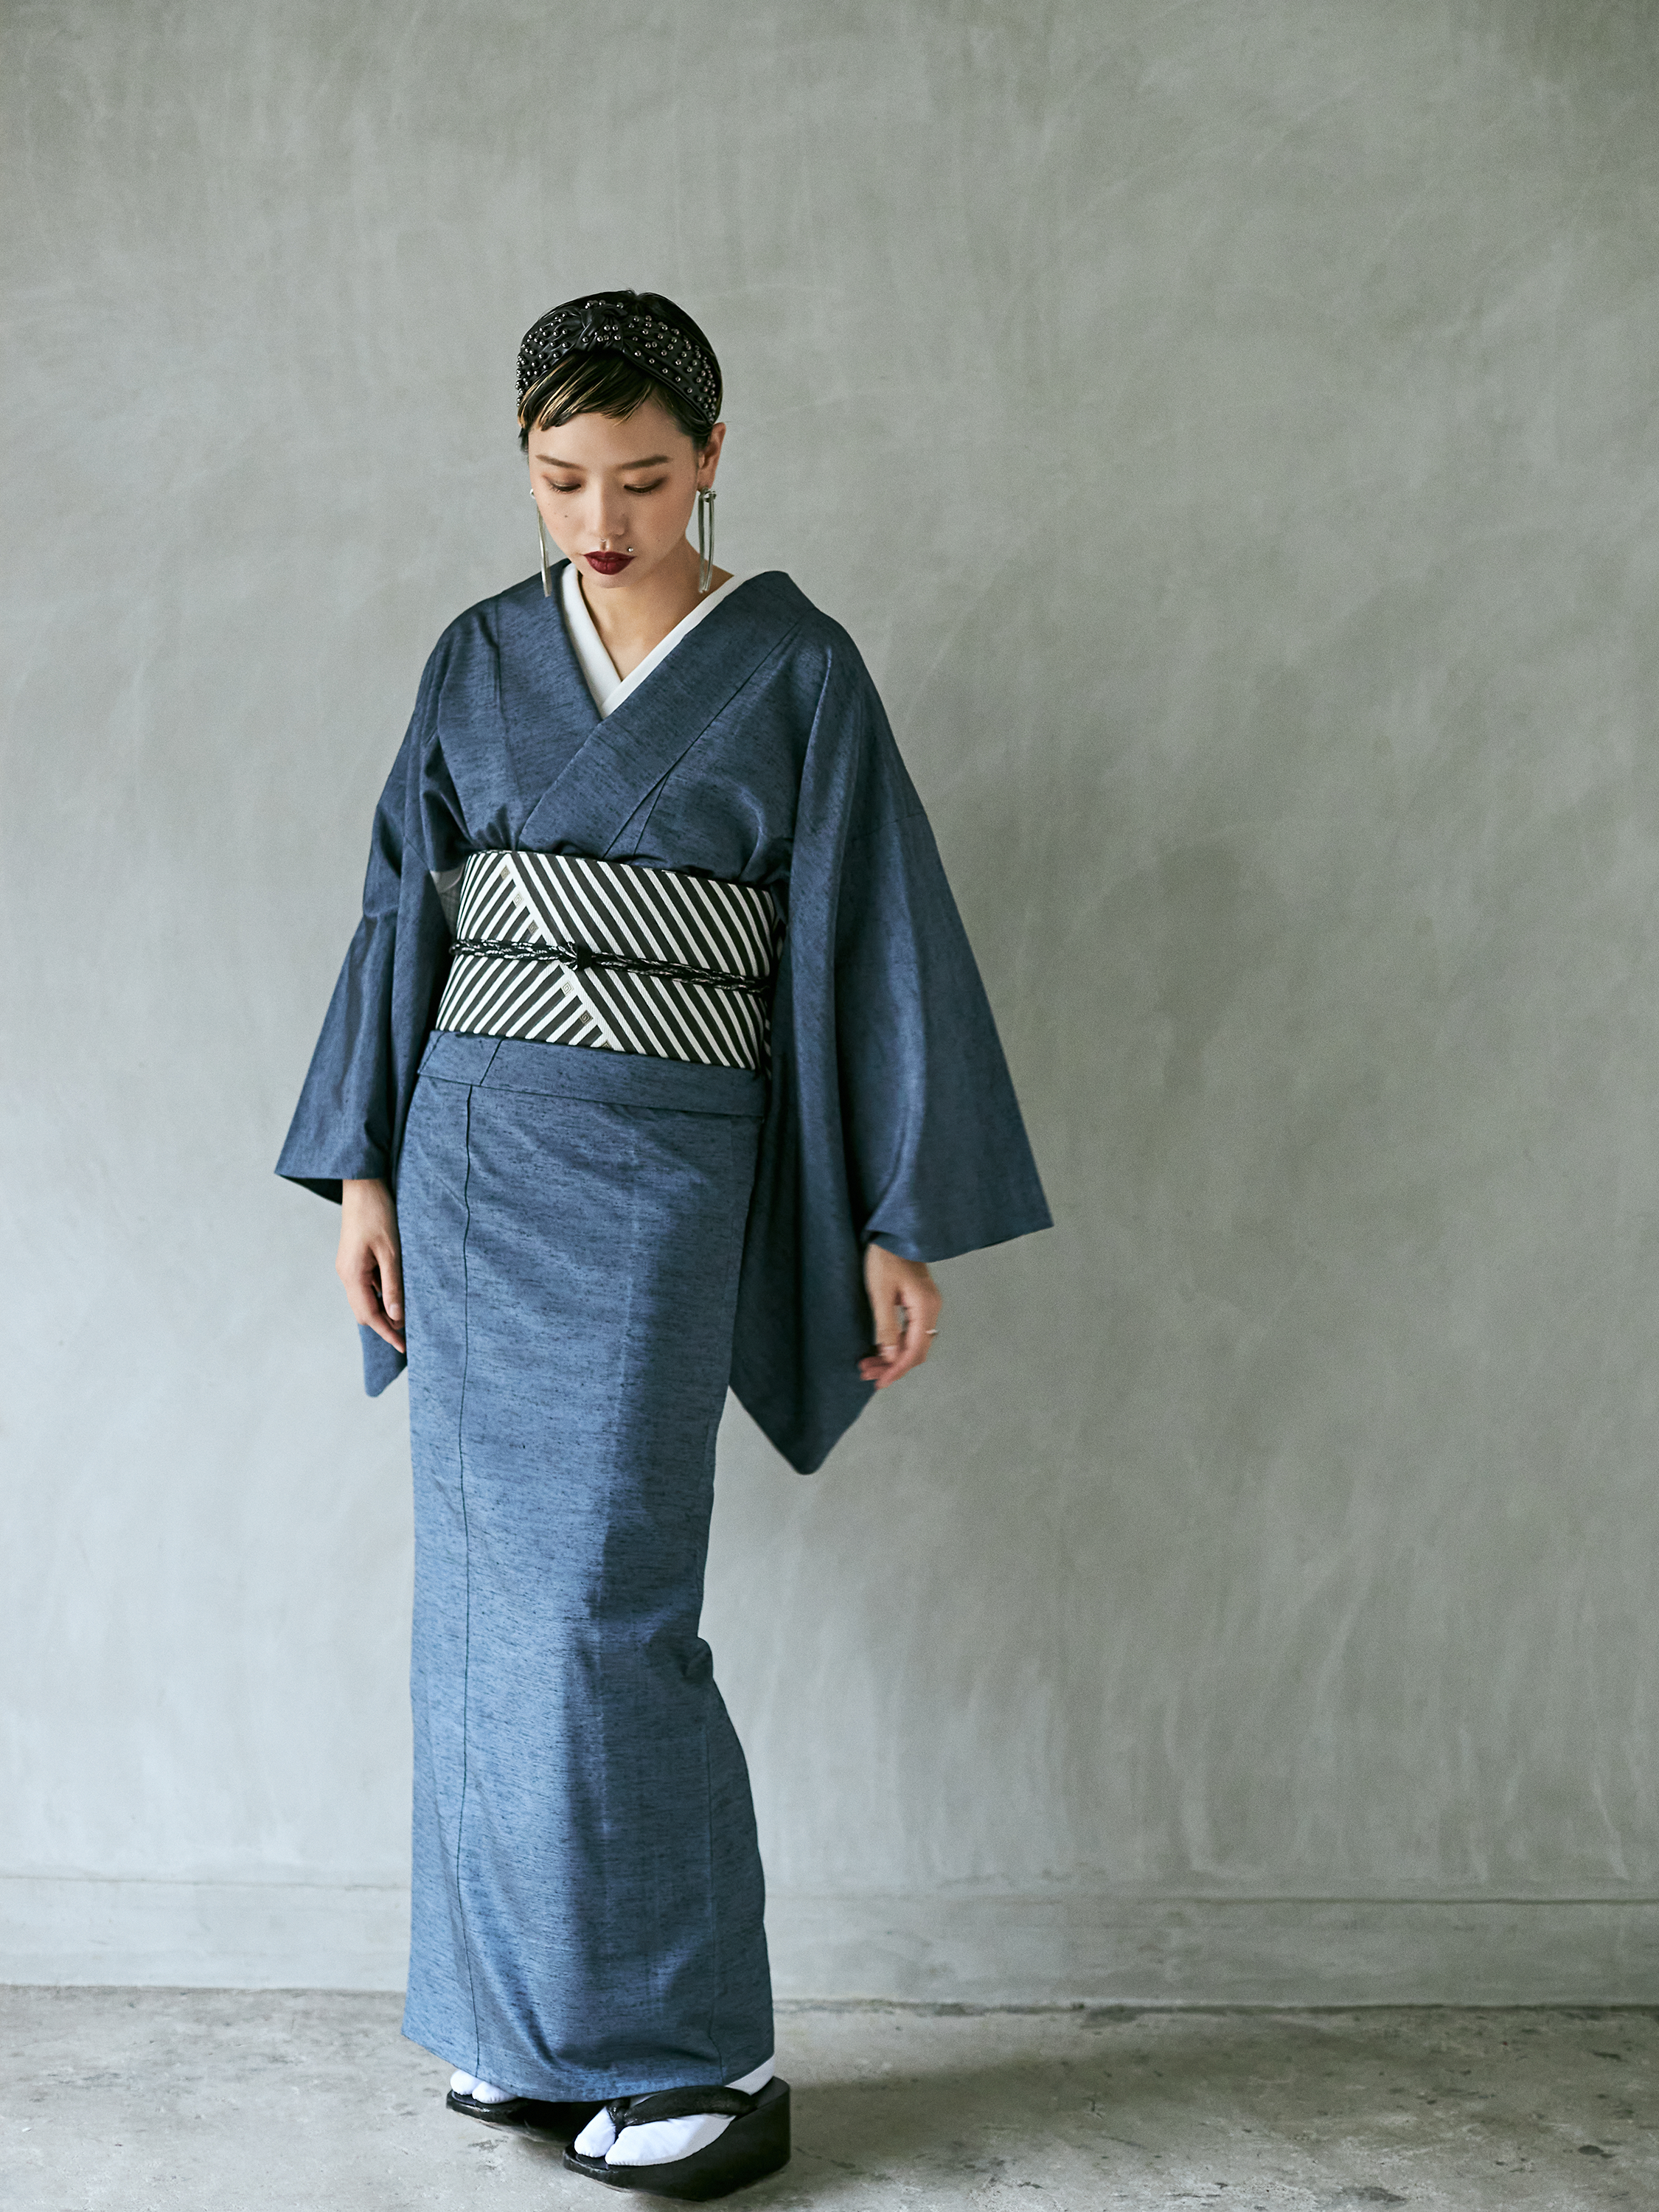 Fabric Yonezawa Ori Juyo Tsumugi "Hibiki" Blue